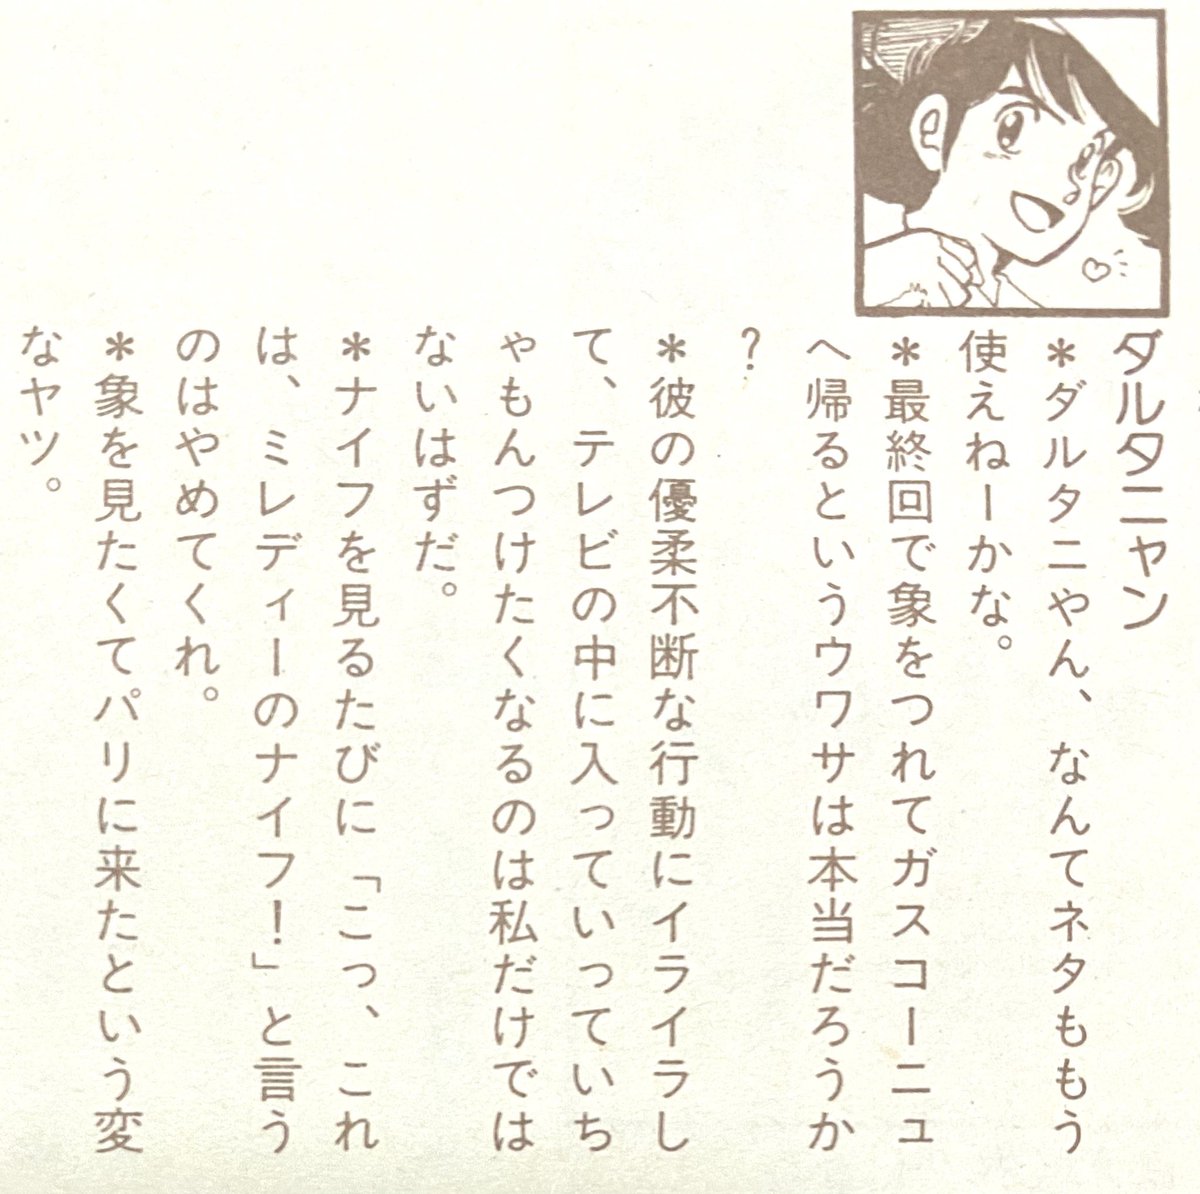 RT アニメ三銃士のDVD-BOXが! ミレディがめちゃくちゃ好きで… ファンロードの三銃士特集のとき(1989年)人名カット描きをさせてもらいました タイトルカットの西本和美さん好きだったなー